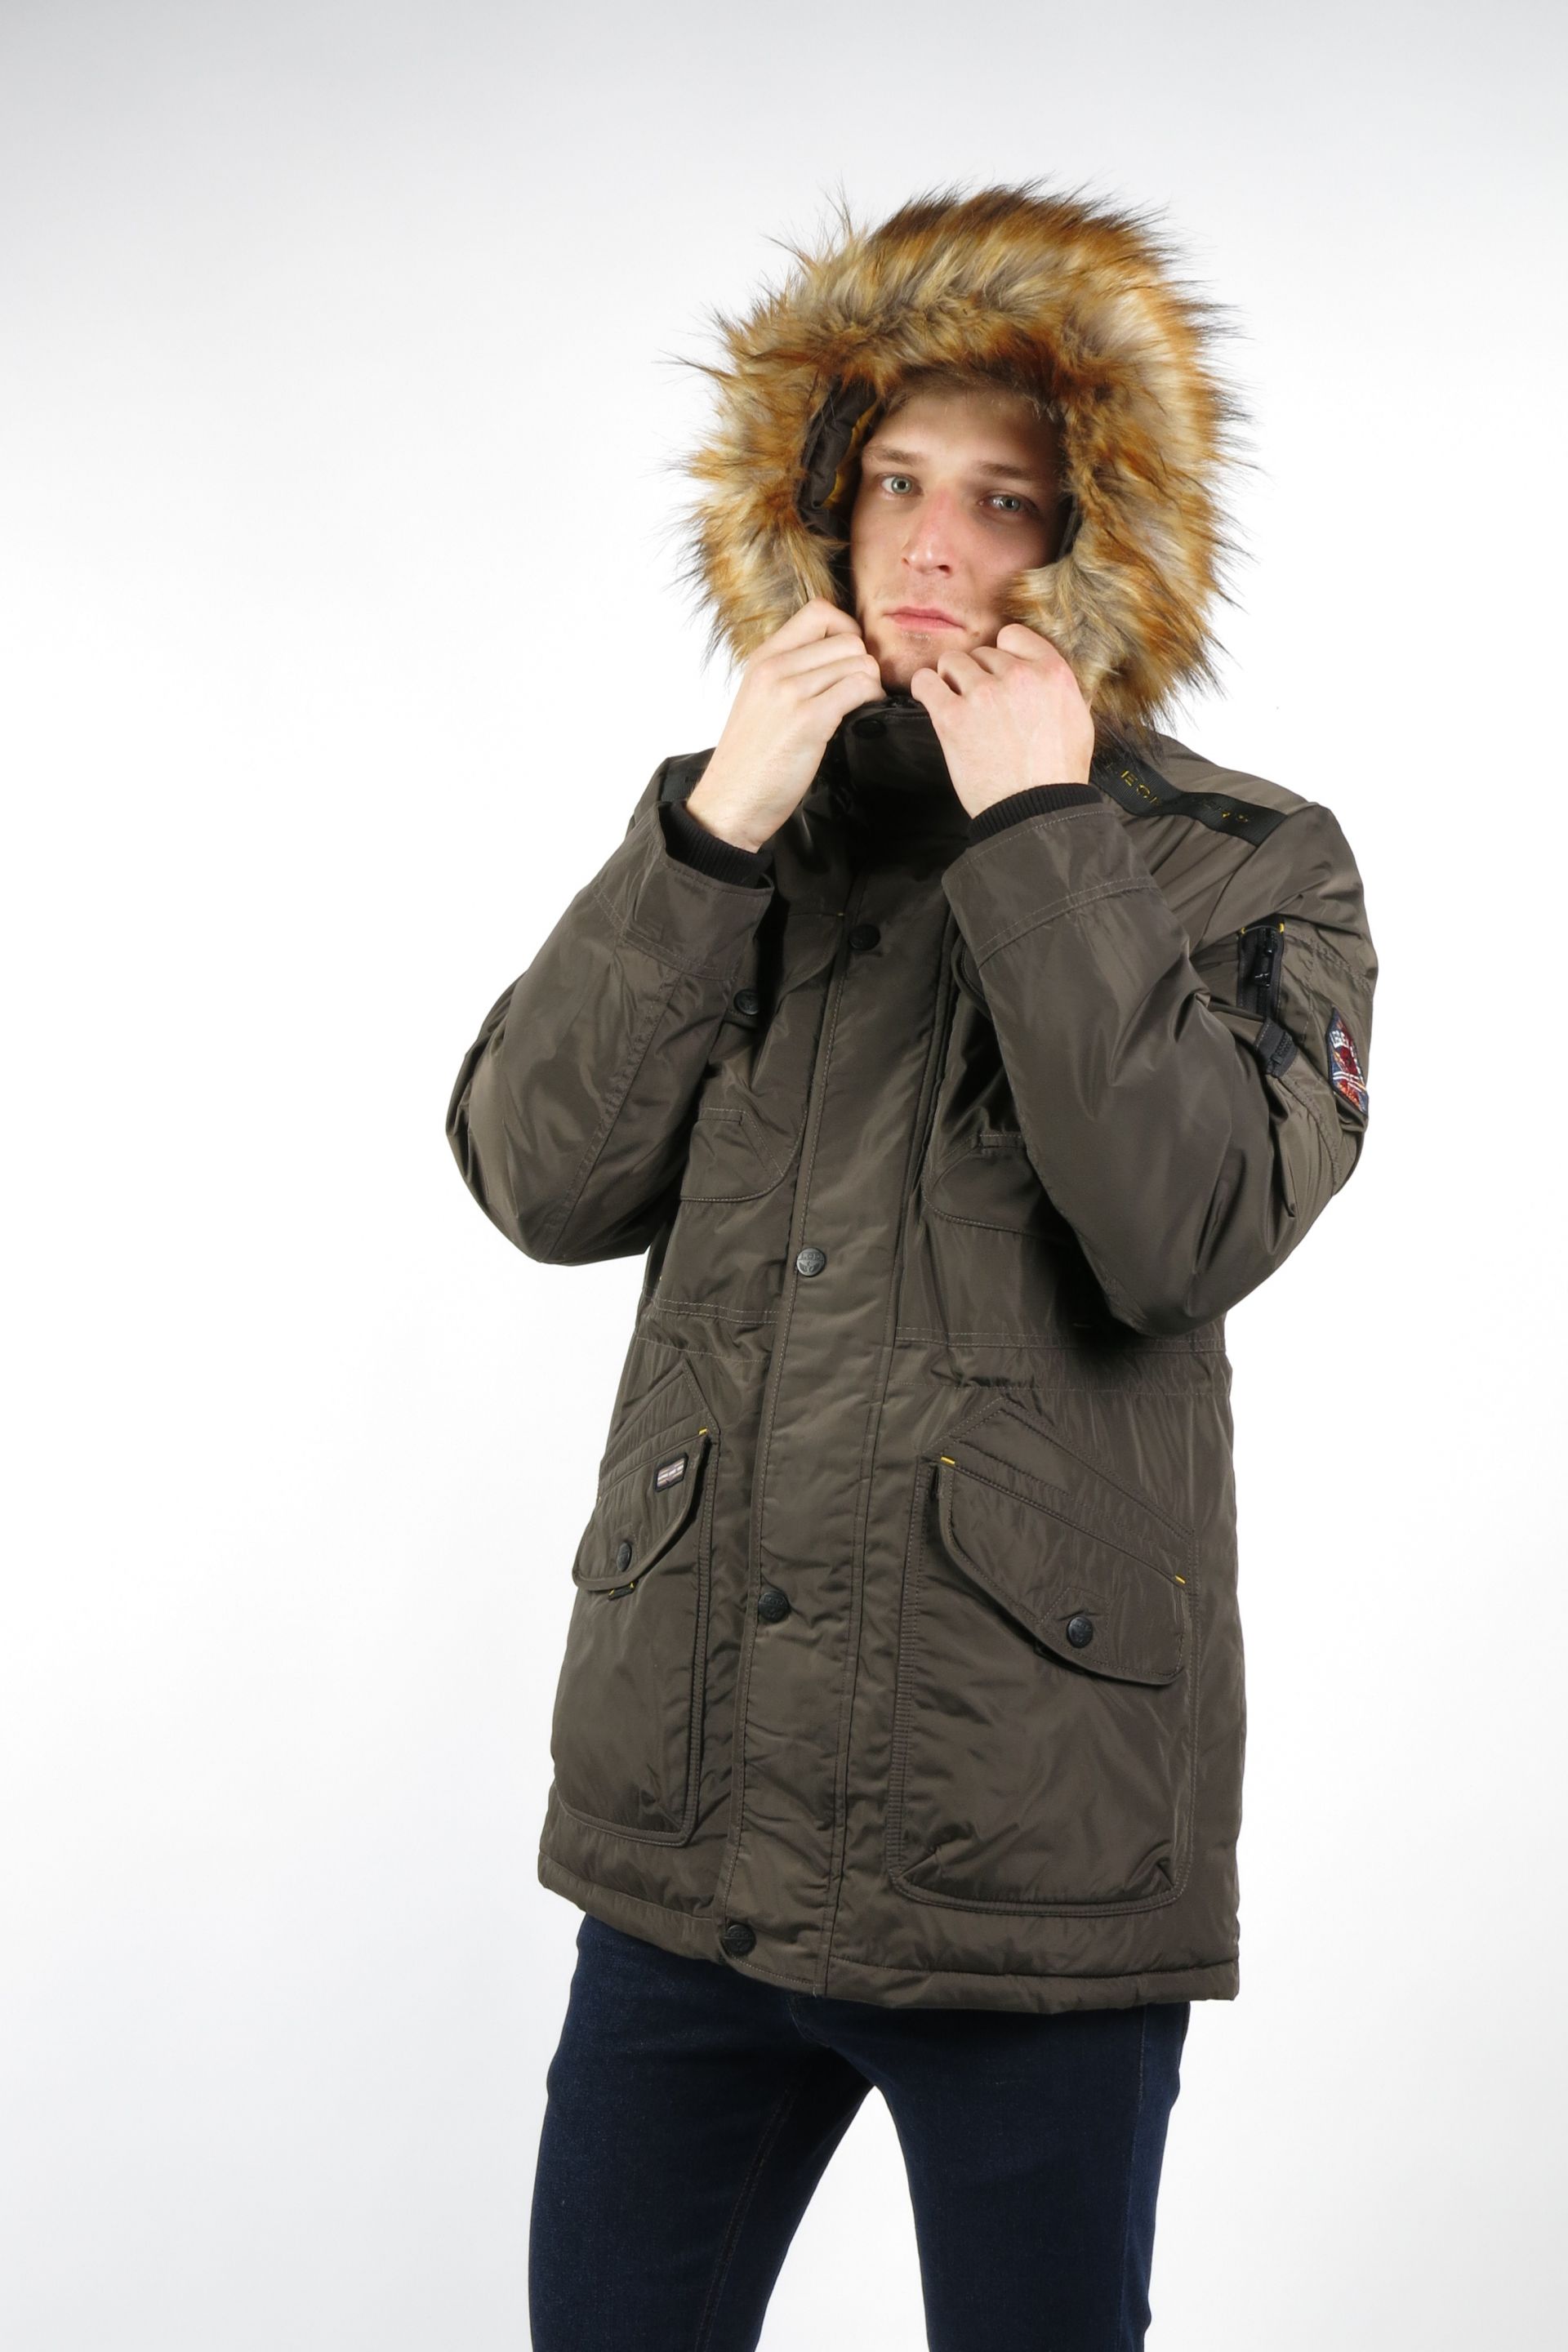 Winter jacket AERONAUTICAL ANACONDA-KHAKI